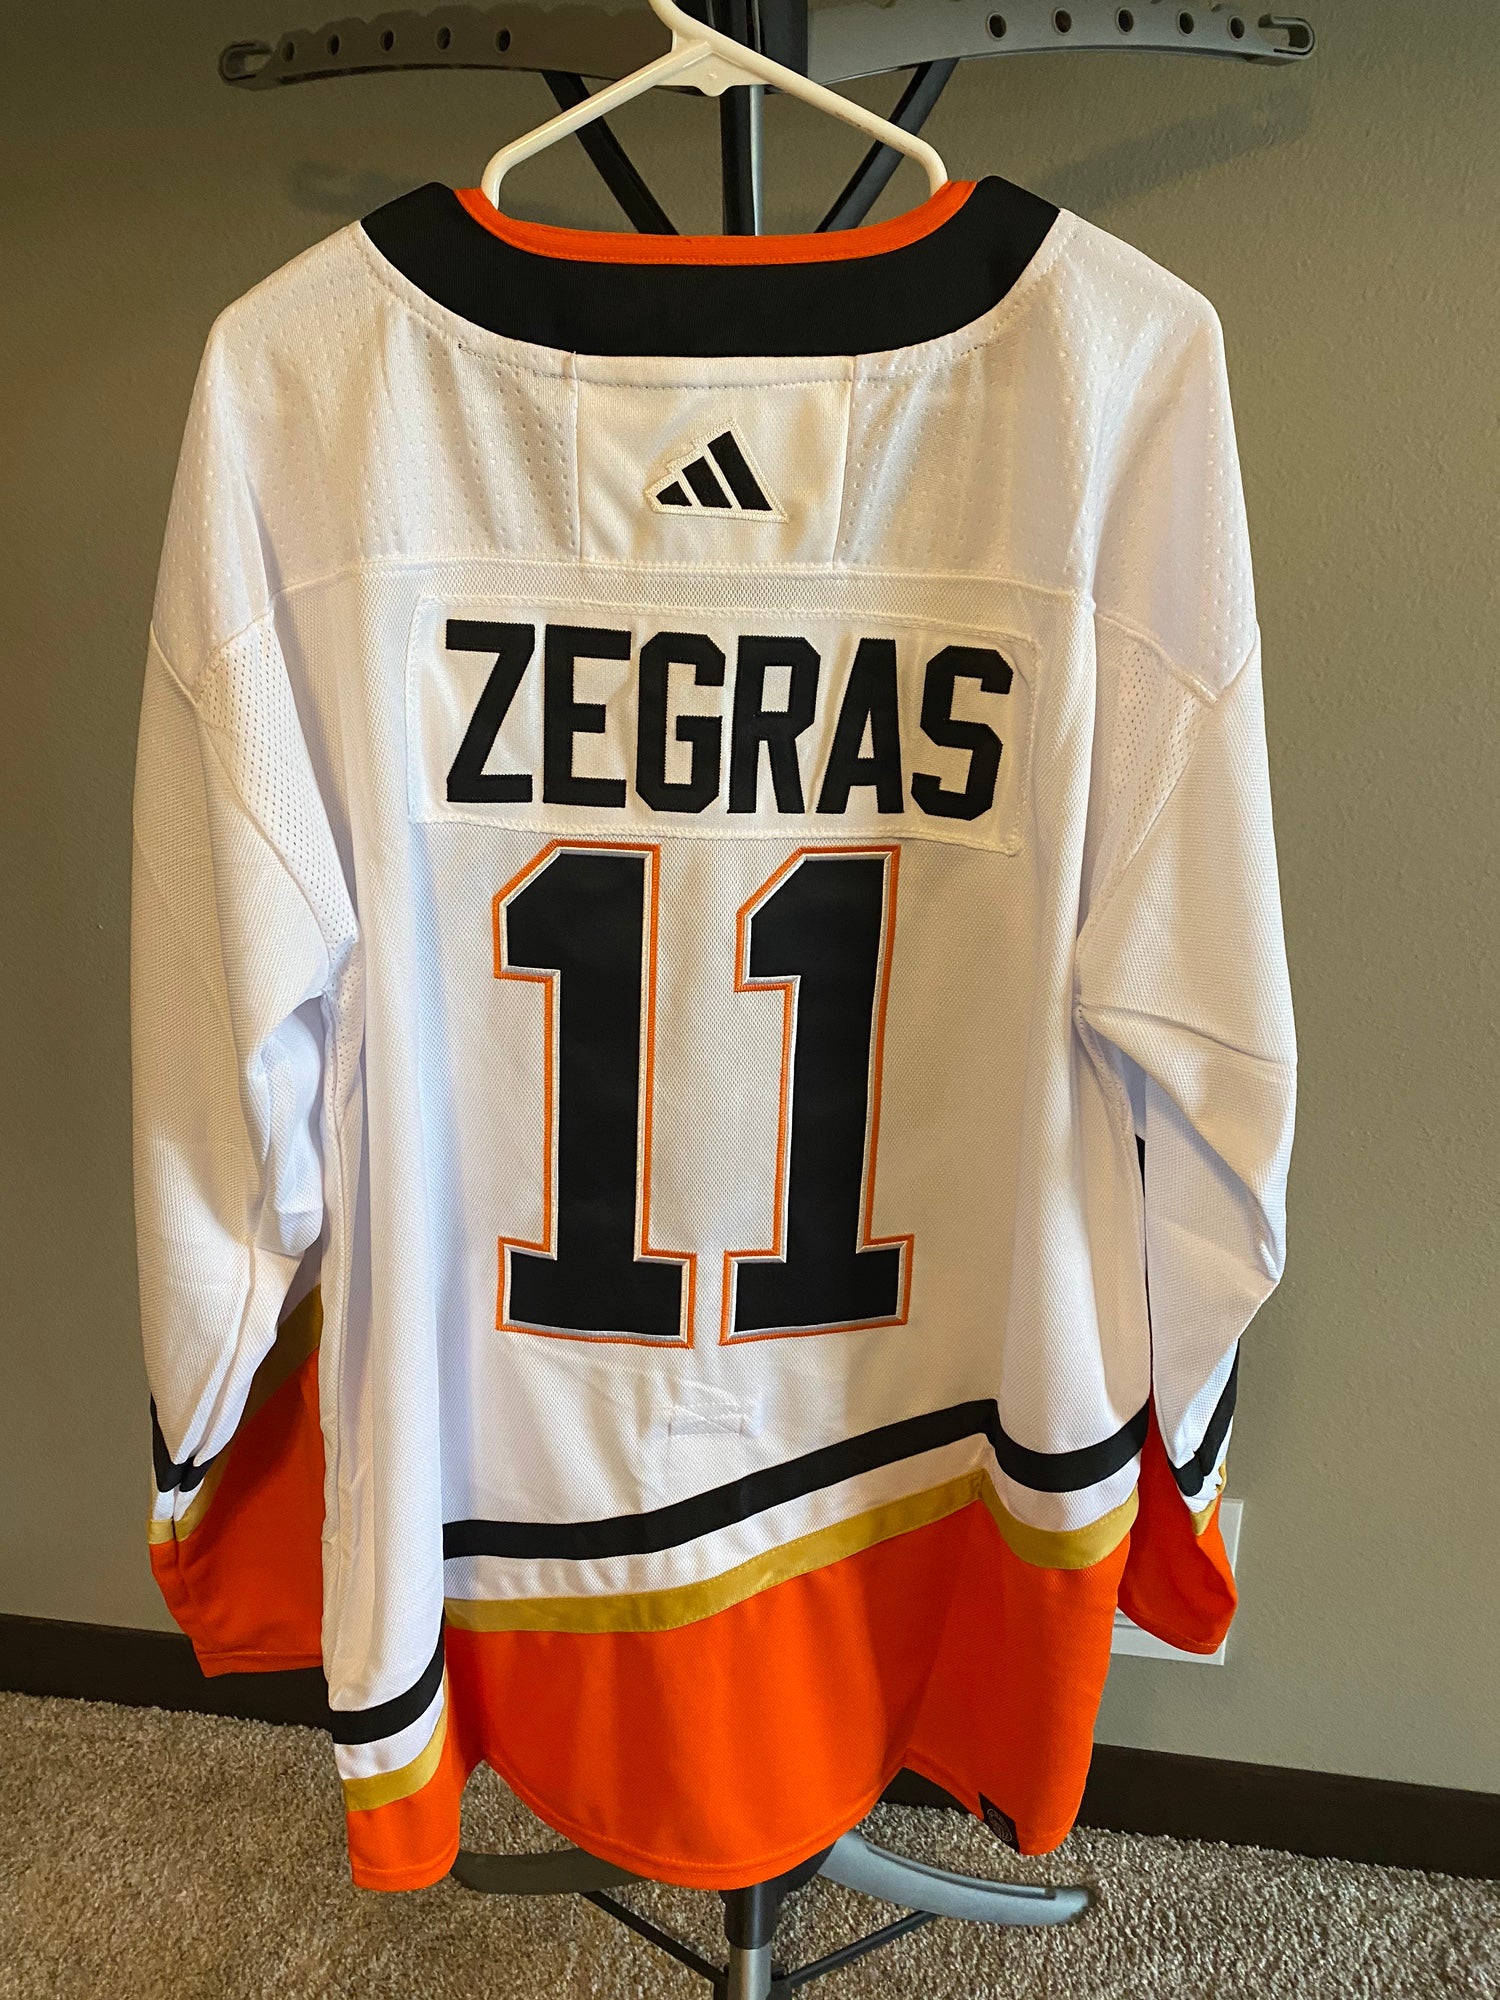 Trevor Zegras Jerseys, Trevor Zegras Shirts, Apparel, Gear